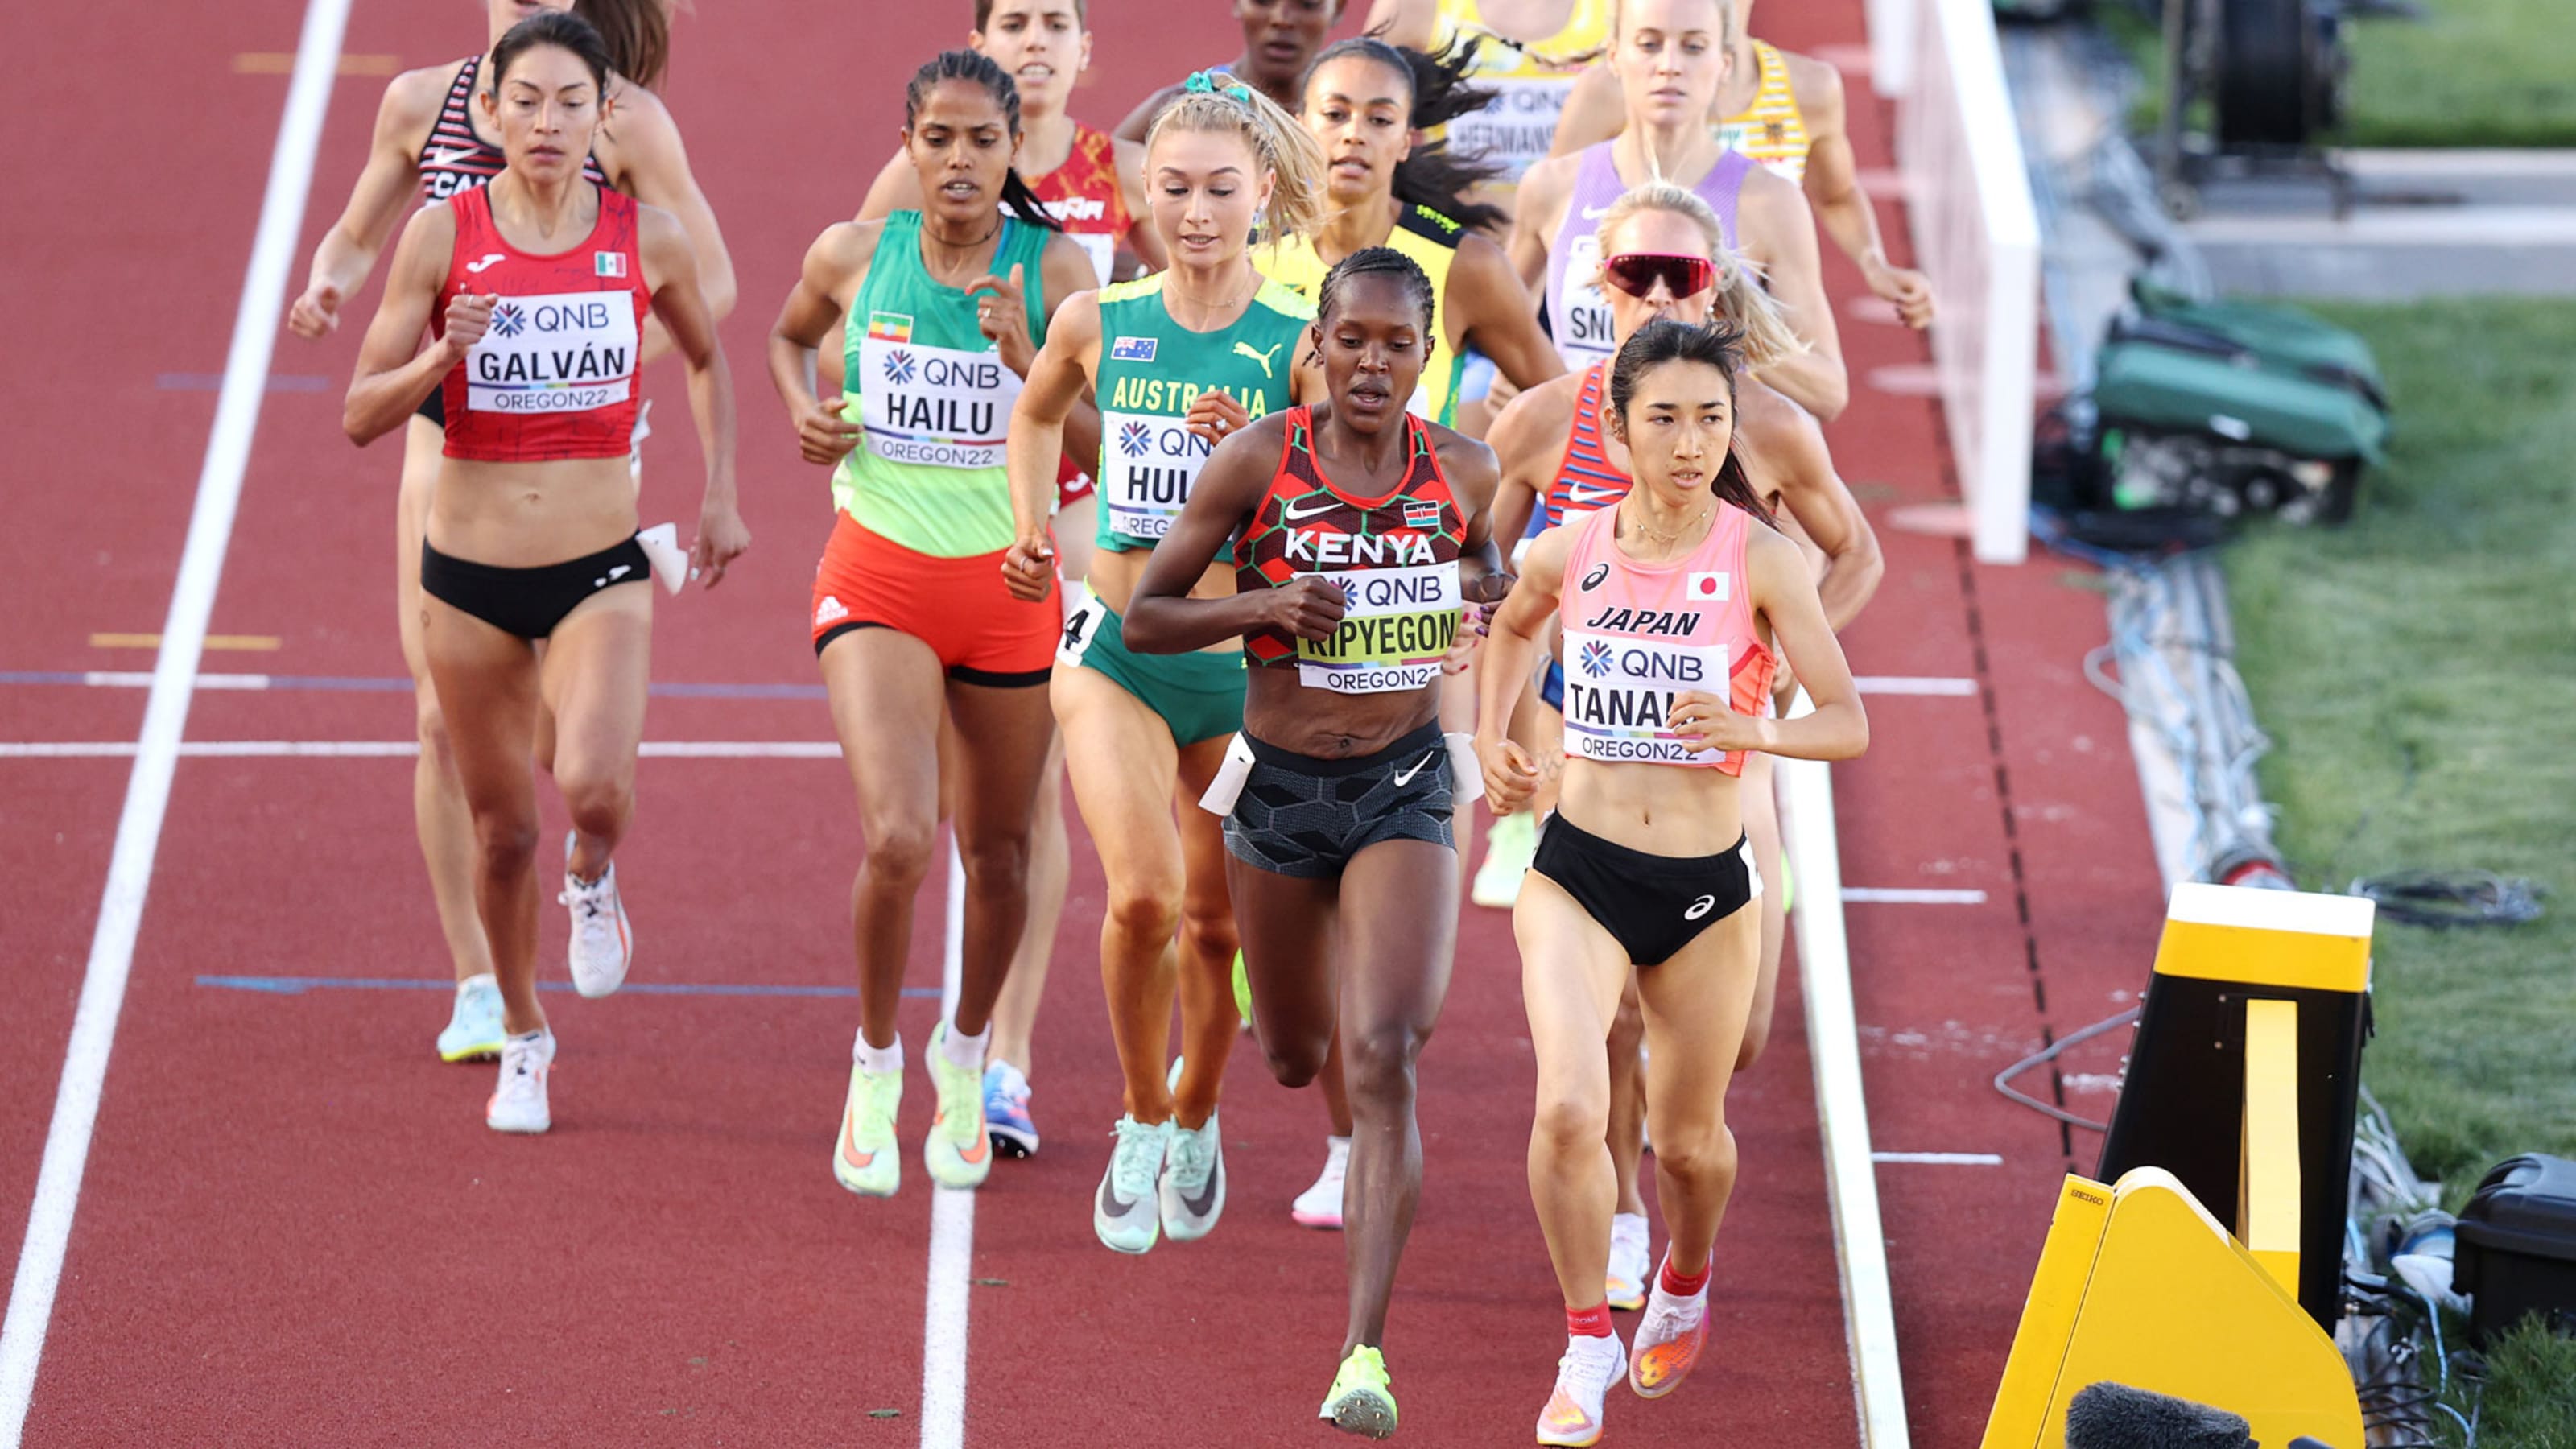 田中希実 女子1500m予選突破 サニブラウン アブデルハキームと坂井隆一郎が男子100m準決勝へ 陸上 22オレゴン第1日